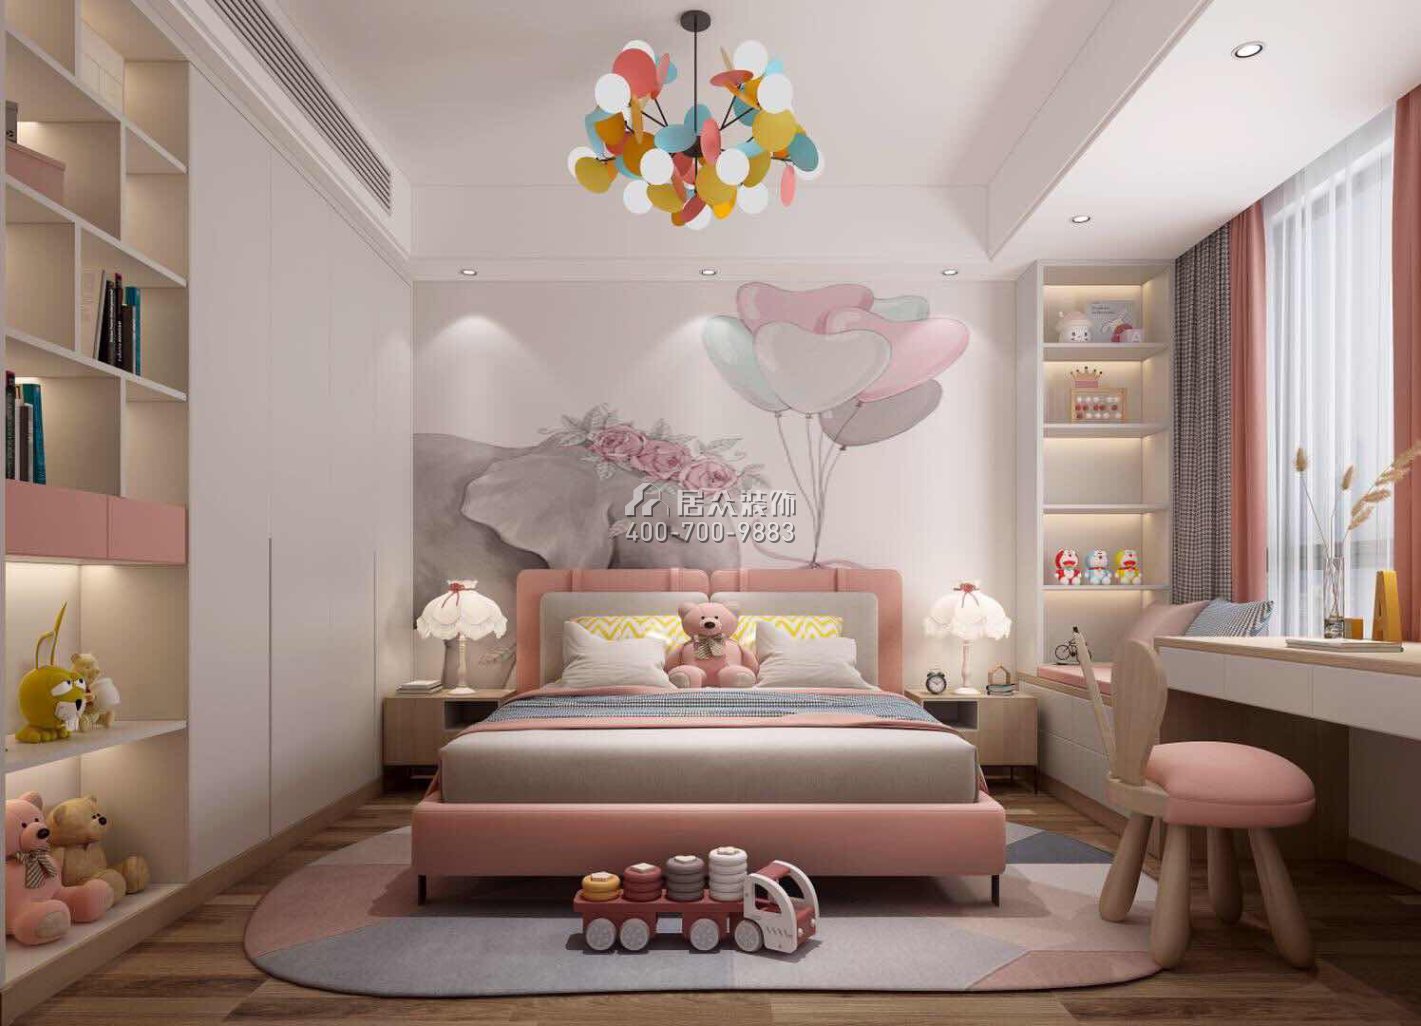 鼎峰尚境155平方米现代简约风格平层户型卧室装修效果图